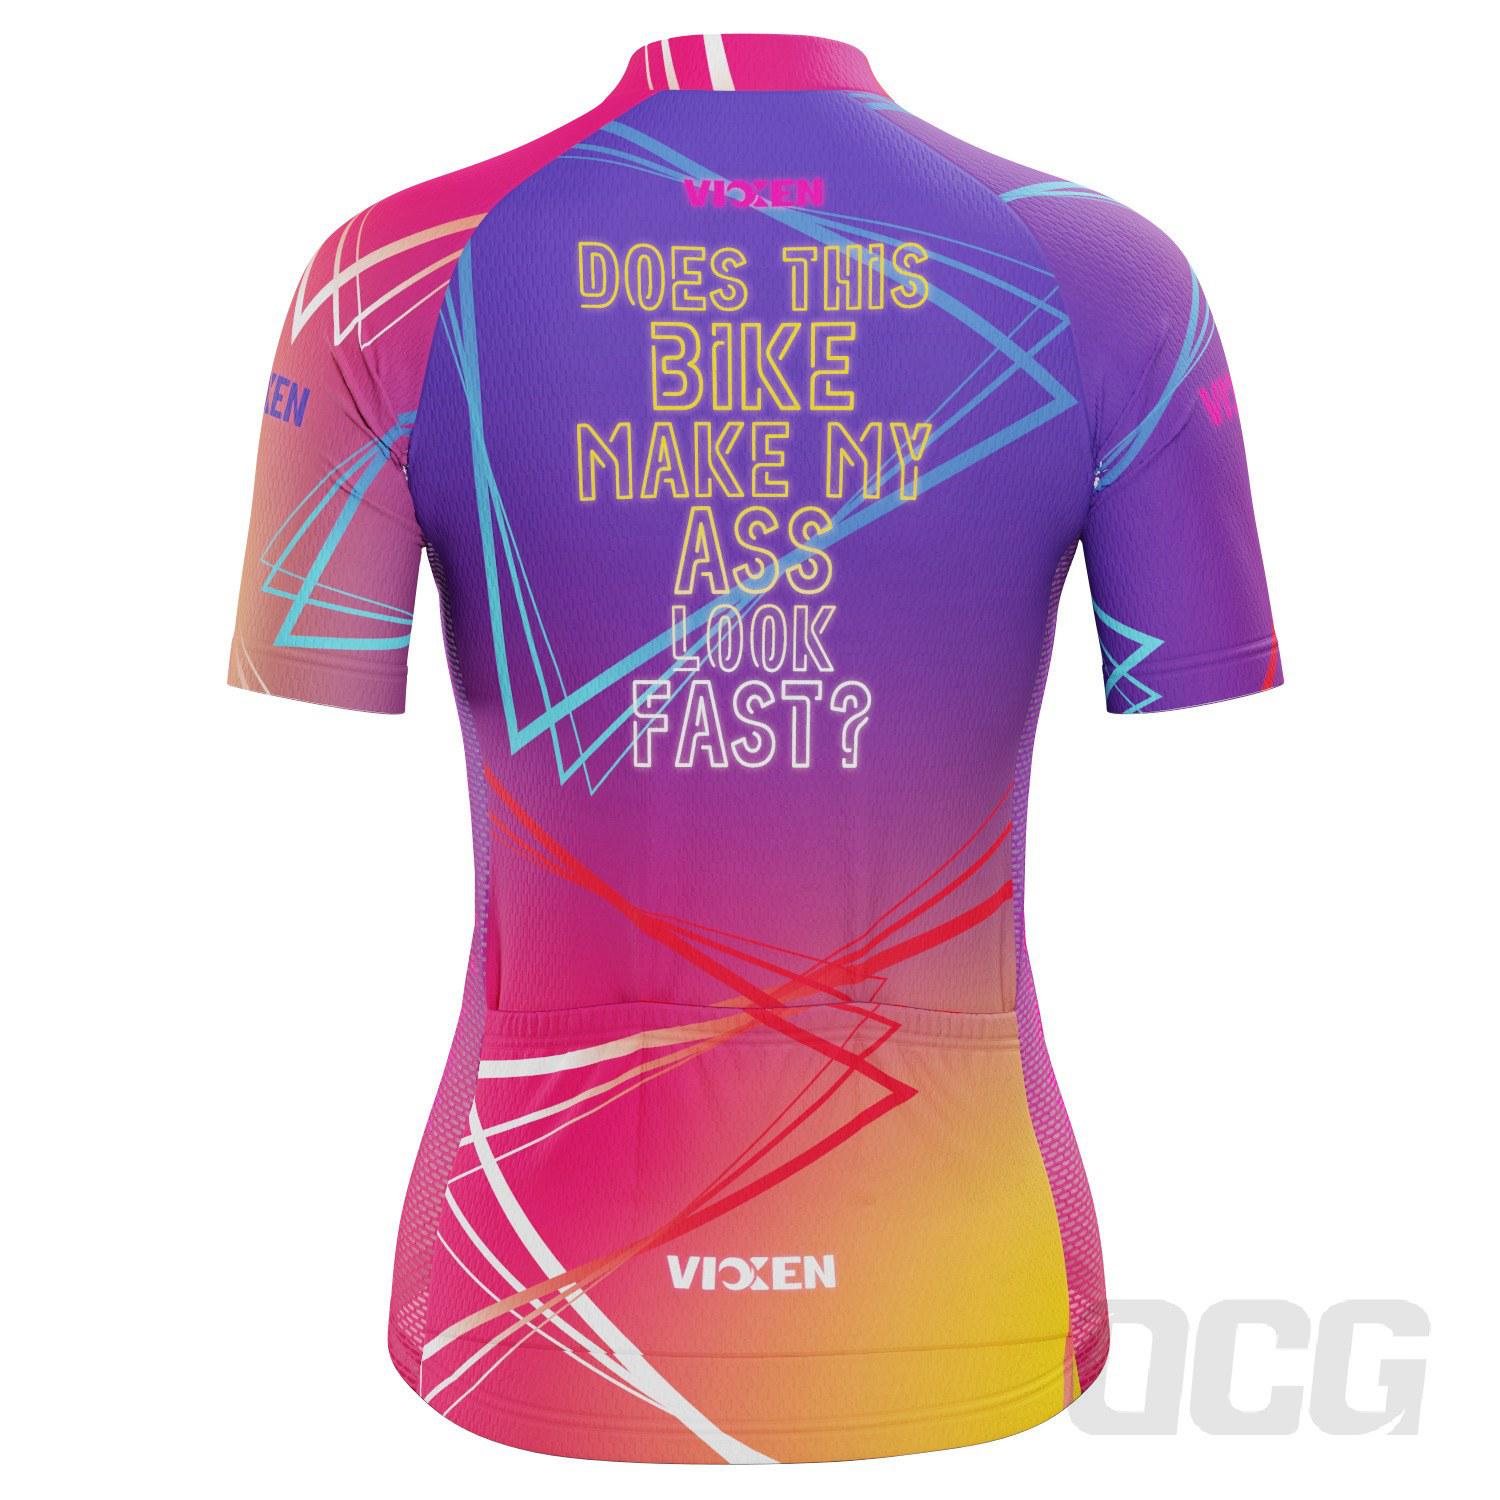 Vixen Women's Fast Ass Short Sleeve Cycling Jersey